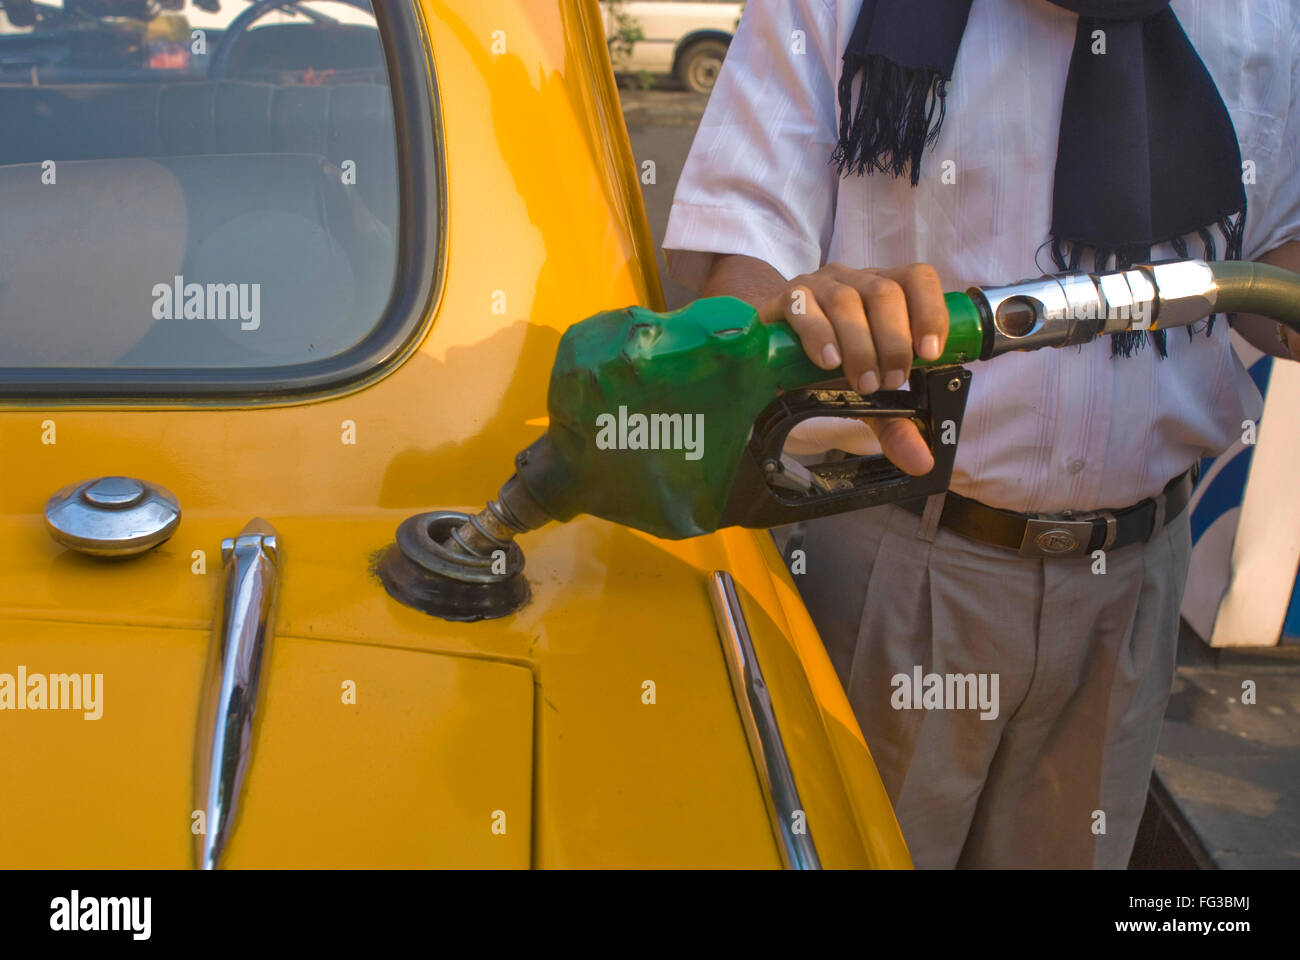 L'homme du remplissage de l'essence dans l'ambassadeur jaune taxi à une pompe à essence ; Bhowanipur ; Calcutta ; l'ouest du Bengale en Inde ; Banque D'Images